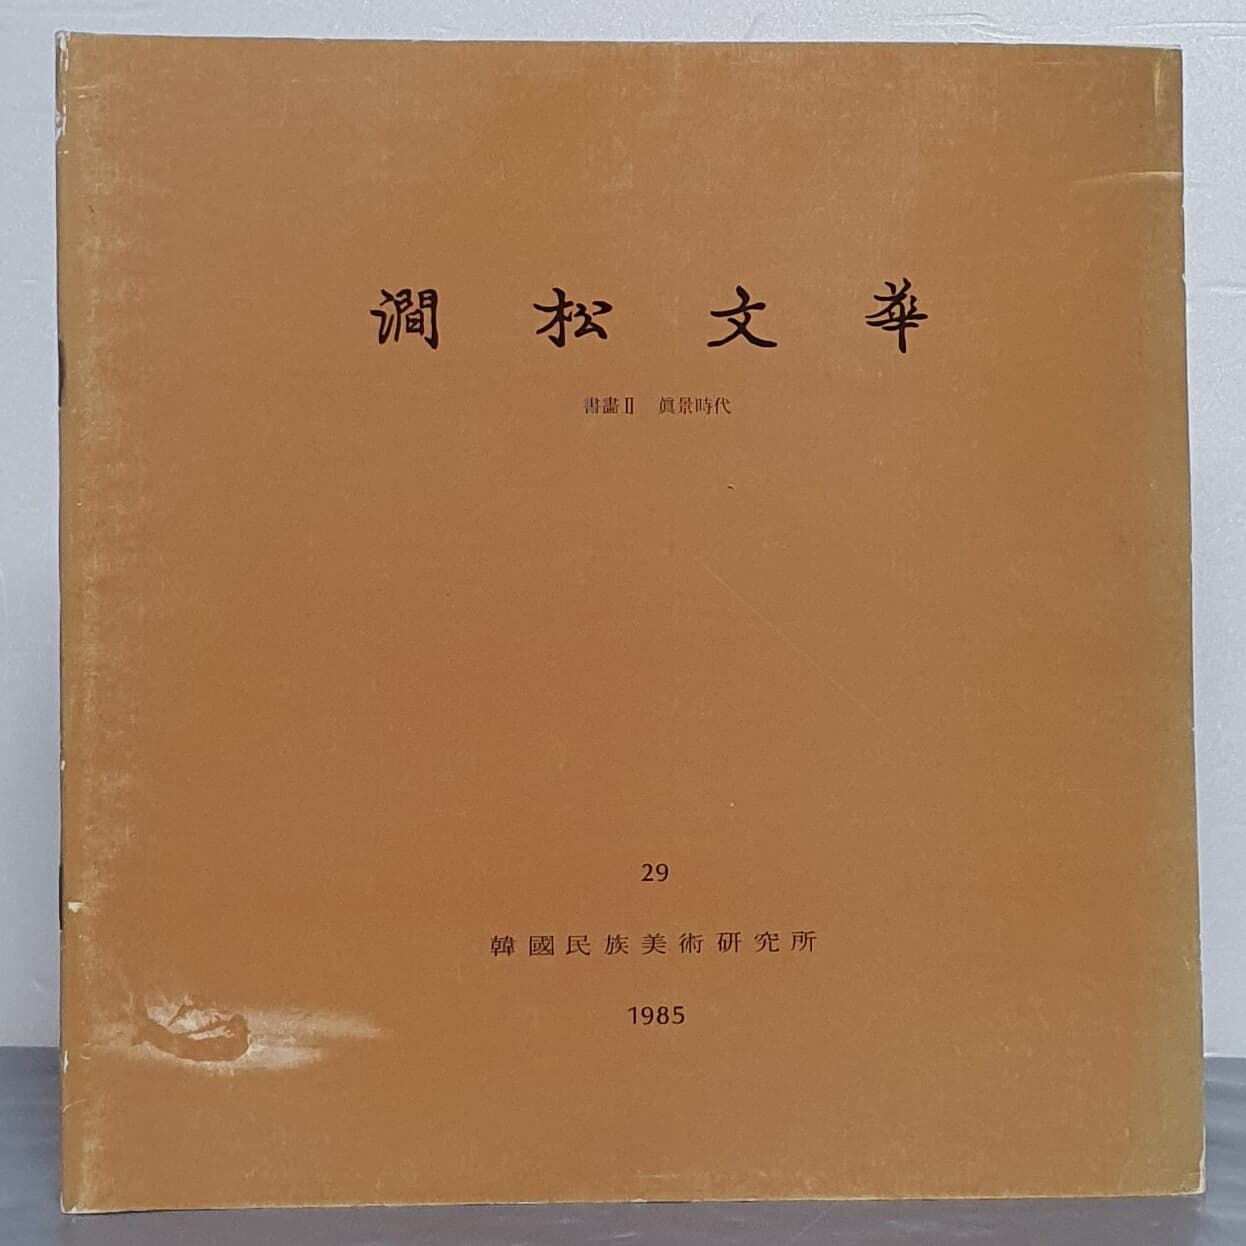 간송문화 제29호 - 서화2 진경시대(1985)